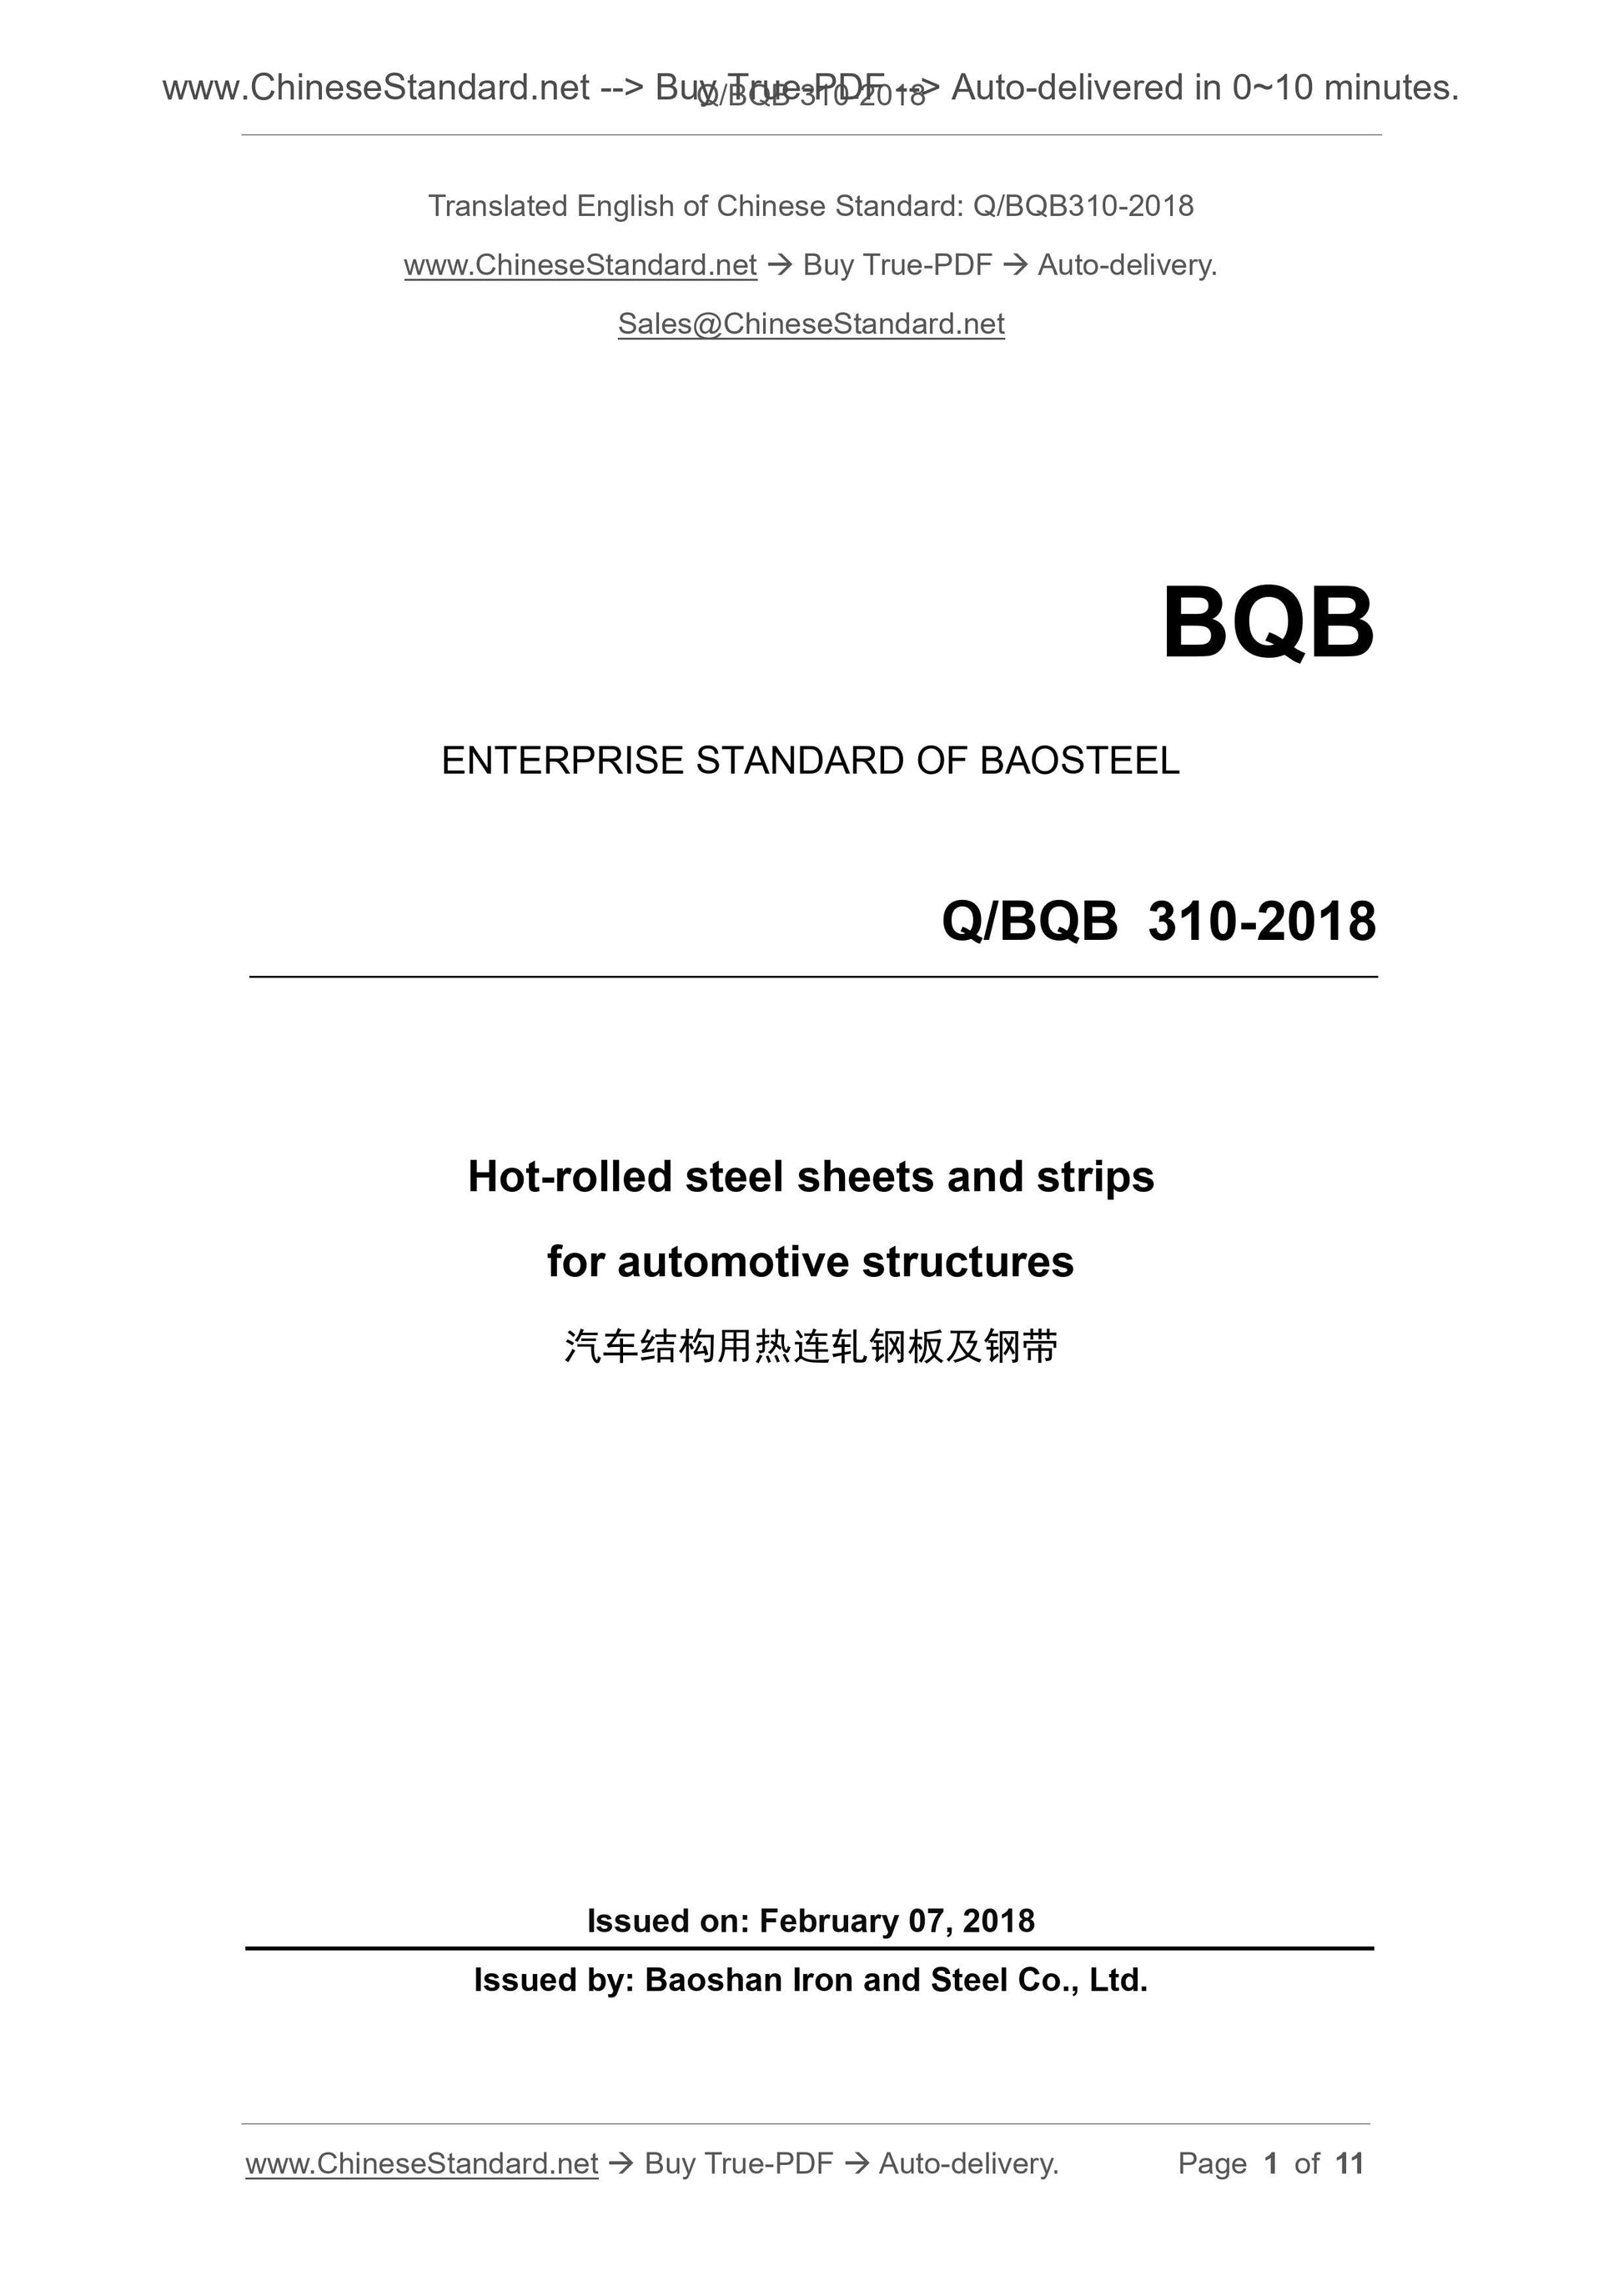 Q/BQB 310-2018 Page 1